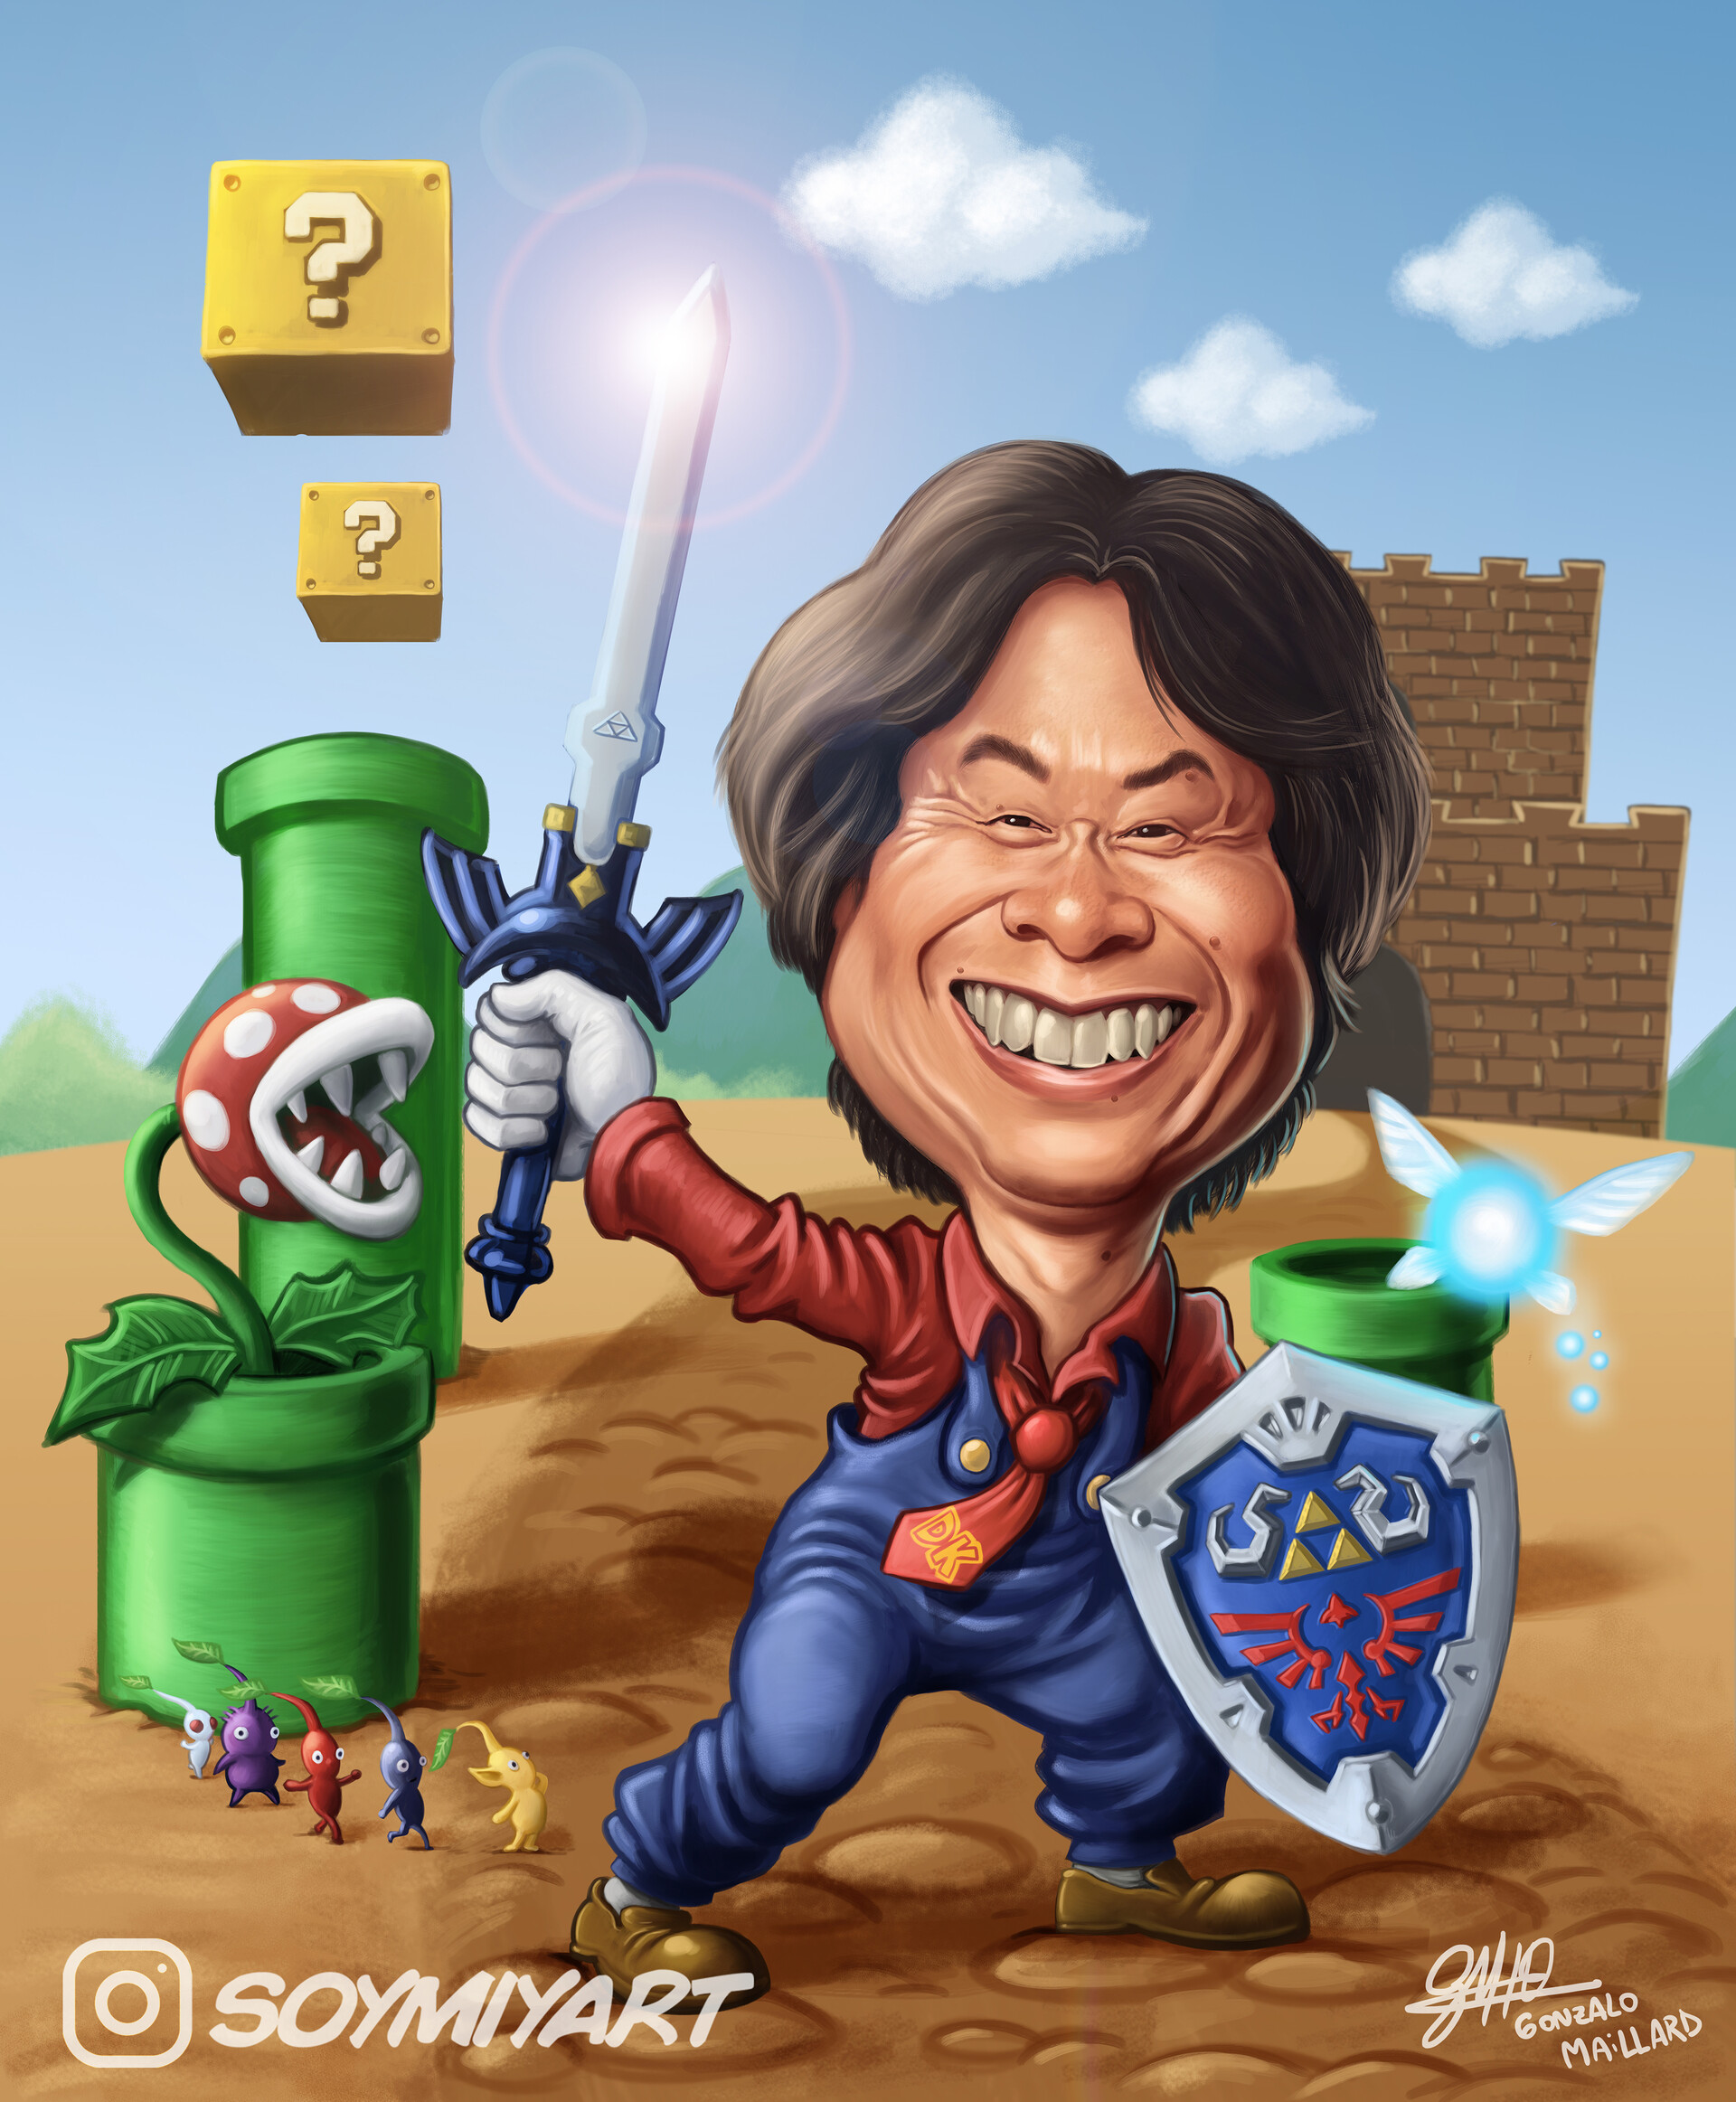 ArtStation - Shigeru Miyamoto - Caricature